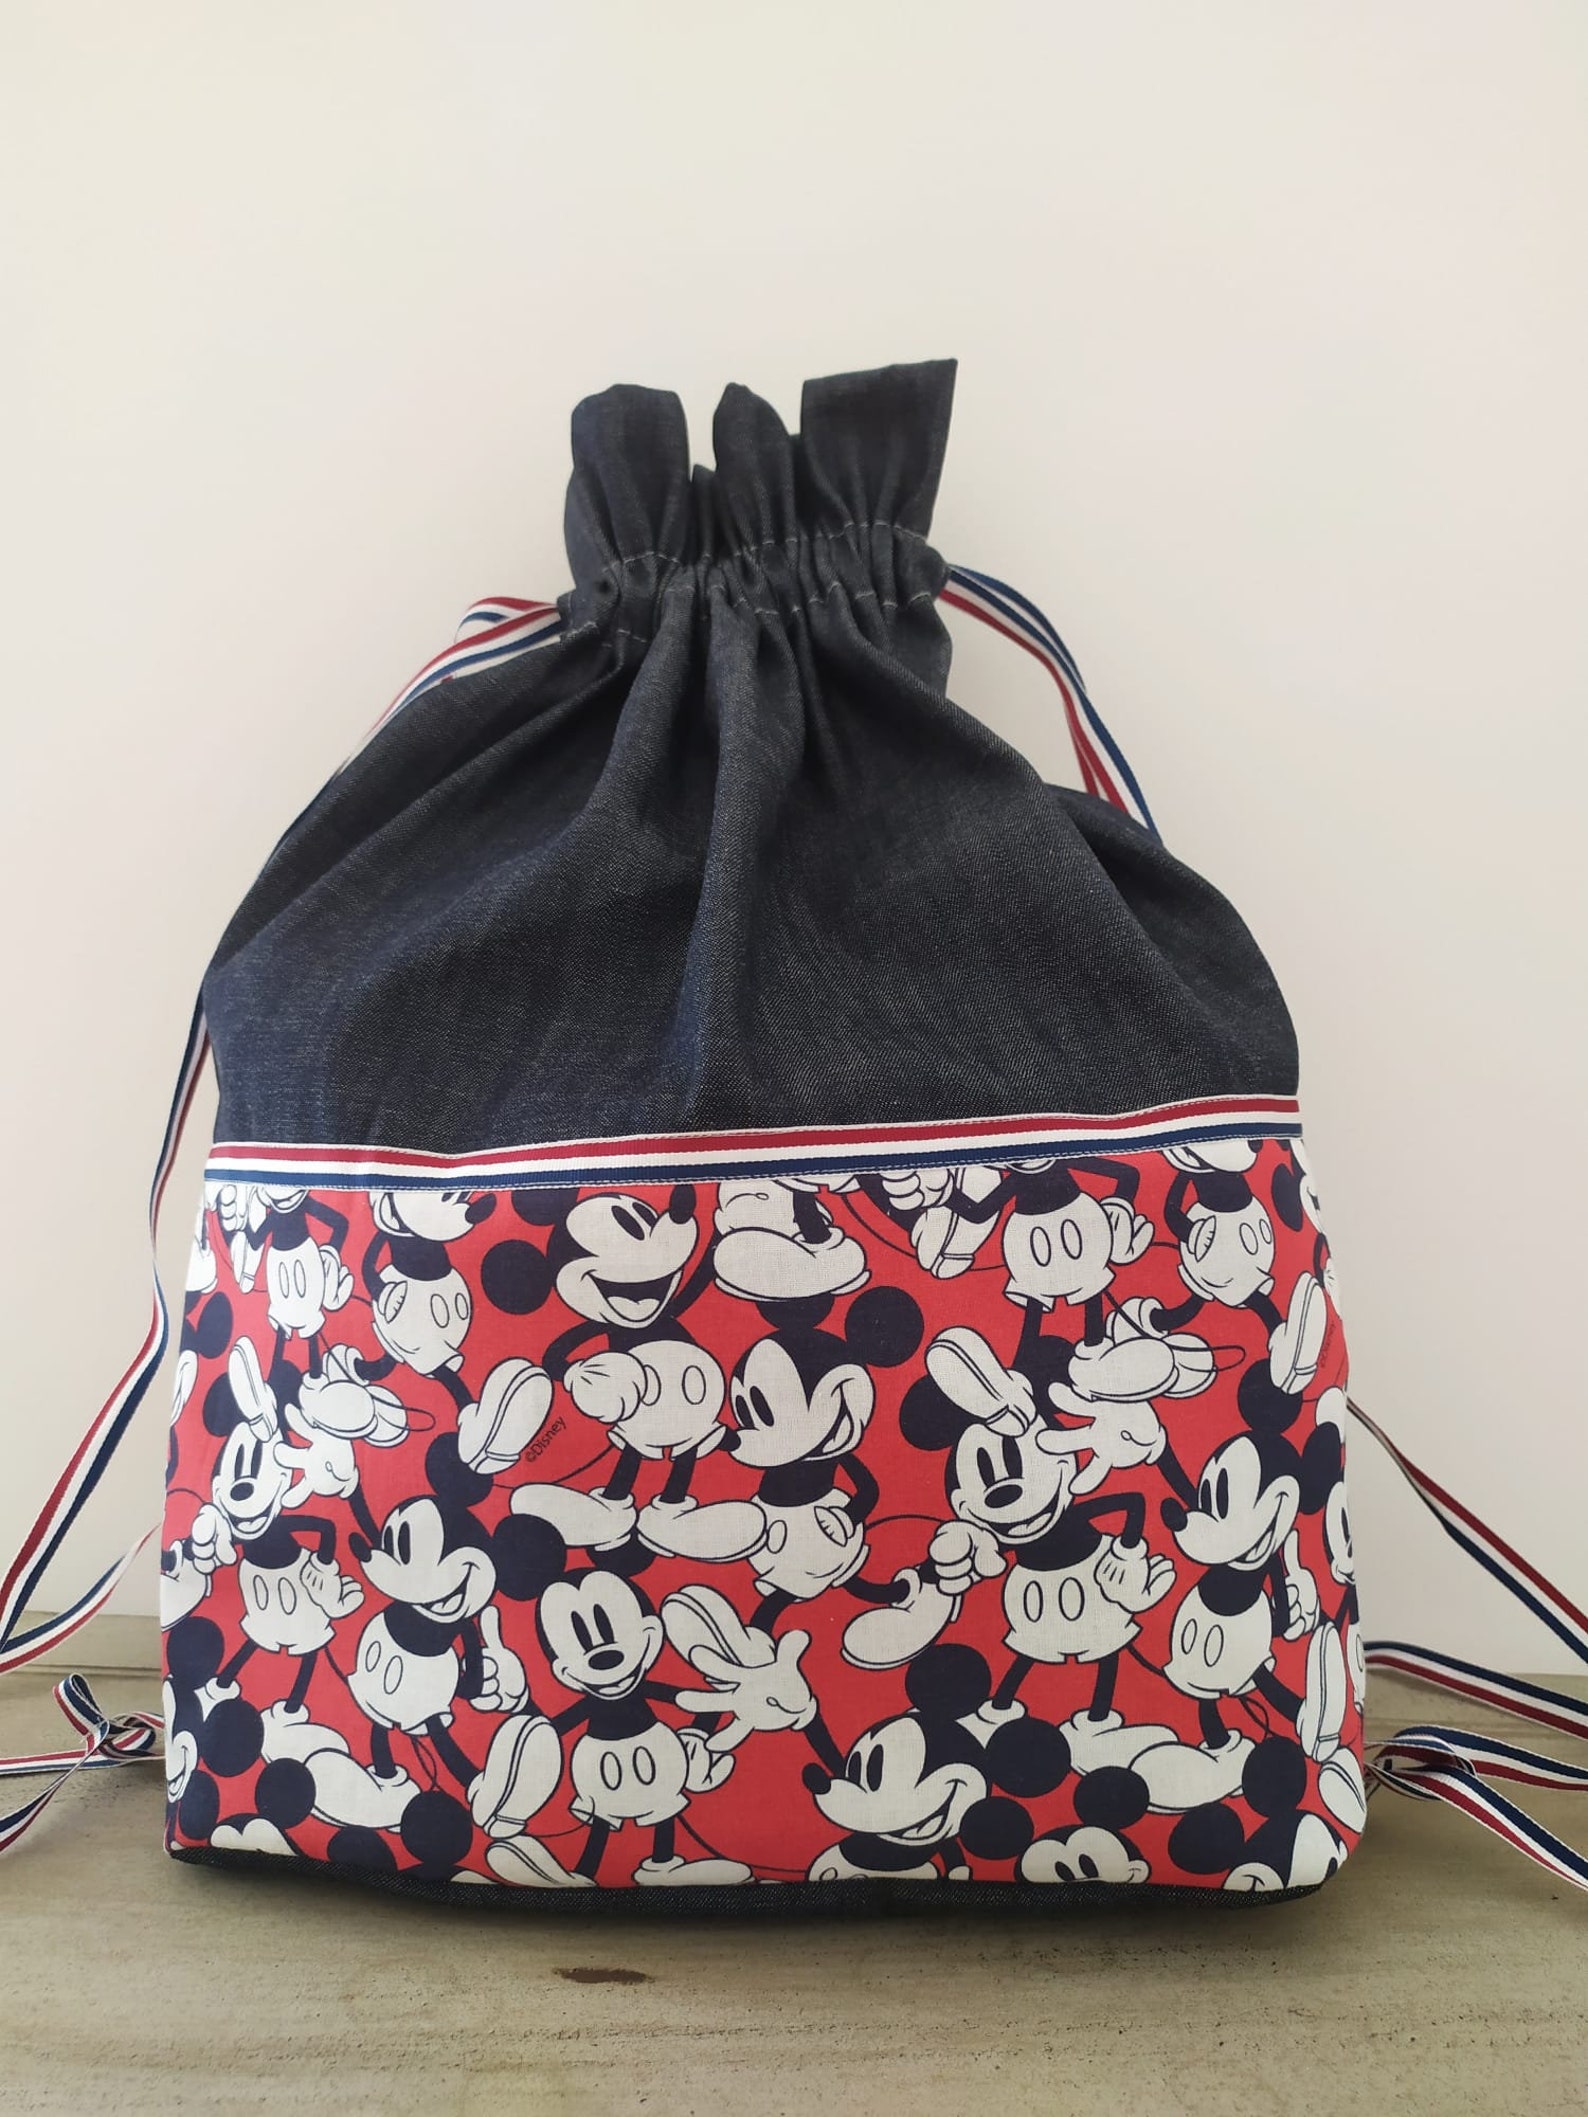 Micky Mouse Vintage Bag Bag - Etsy UK